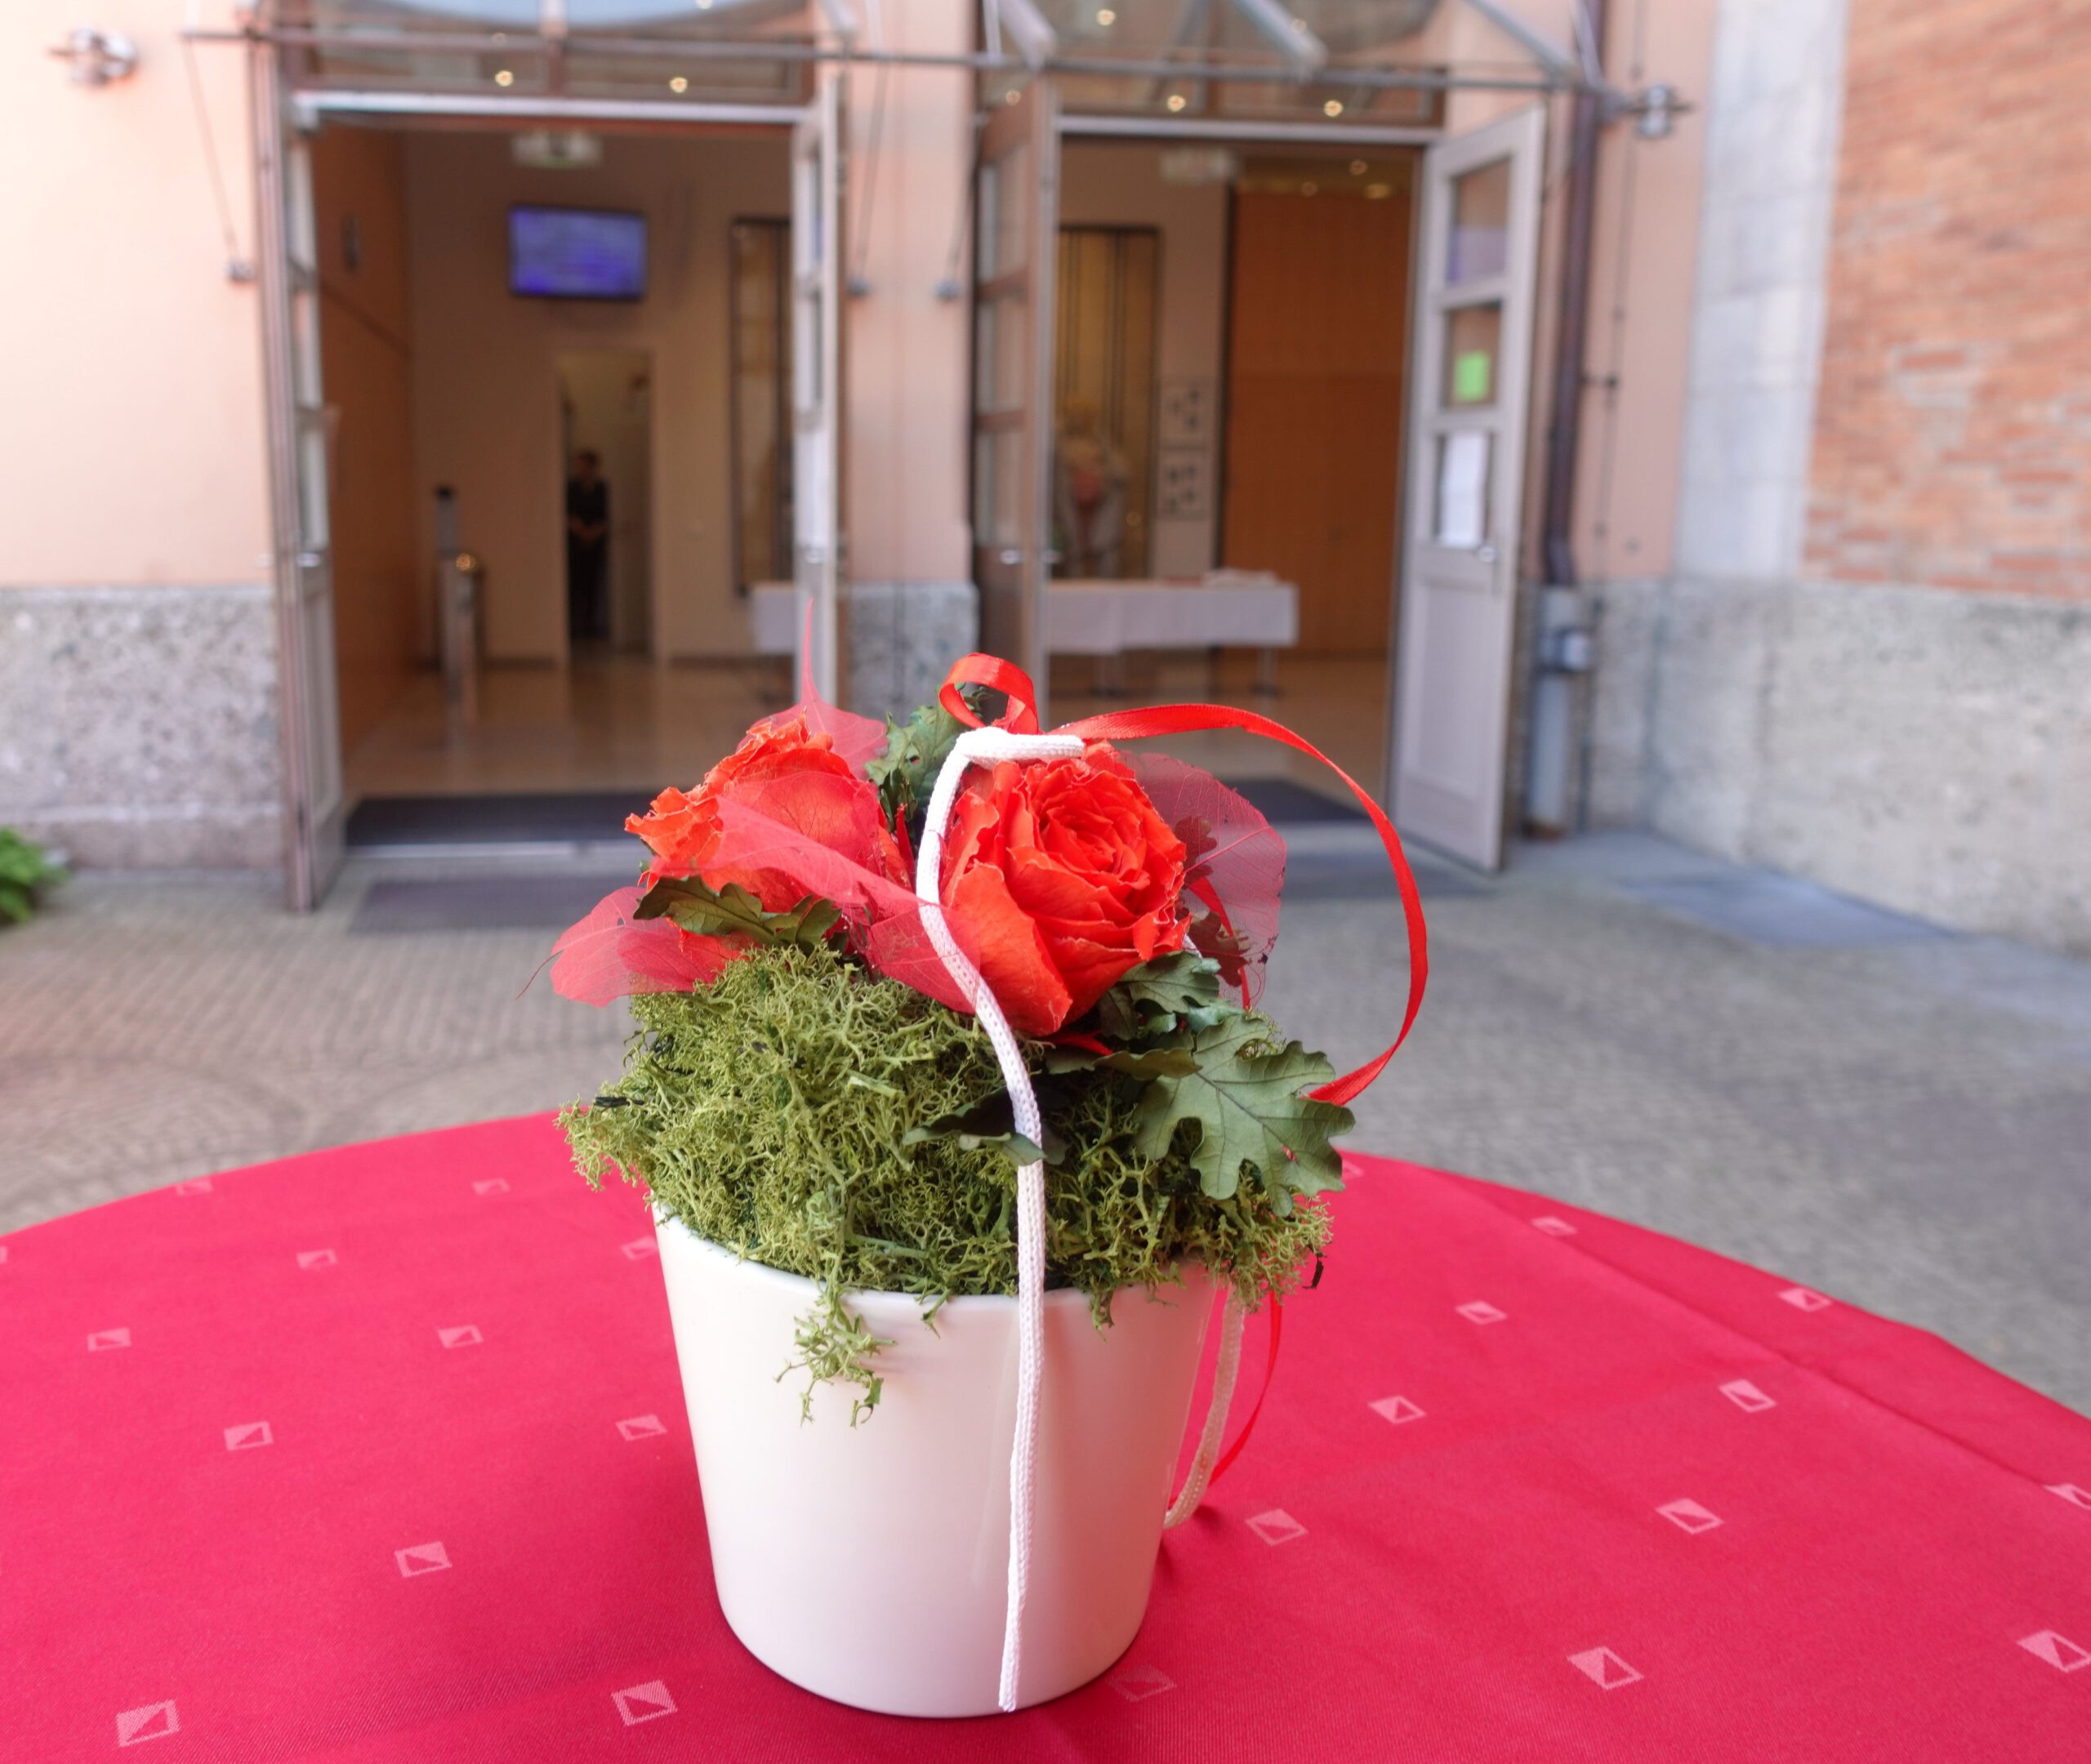 Blick über kleinen weissen Blumentopf mit Rosen hin zu den Eingangstüren des Rosenheimer Rathauses